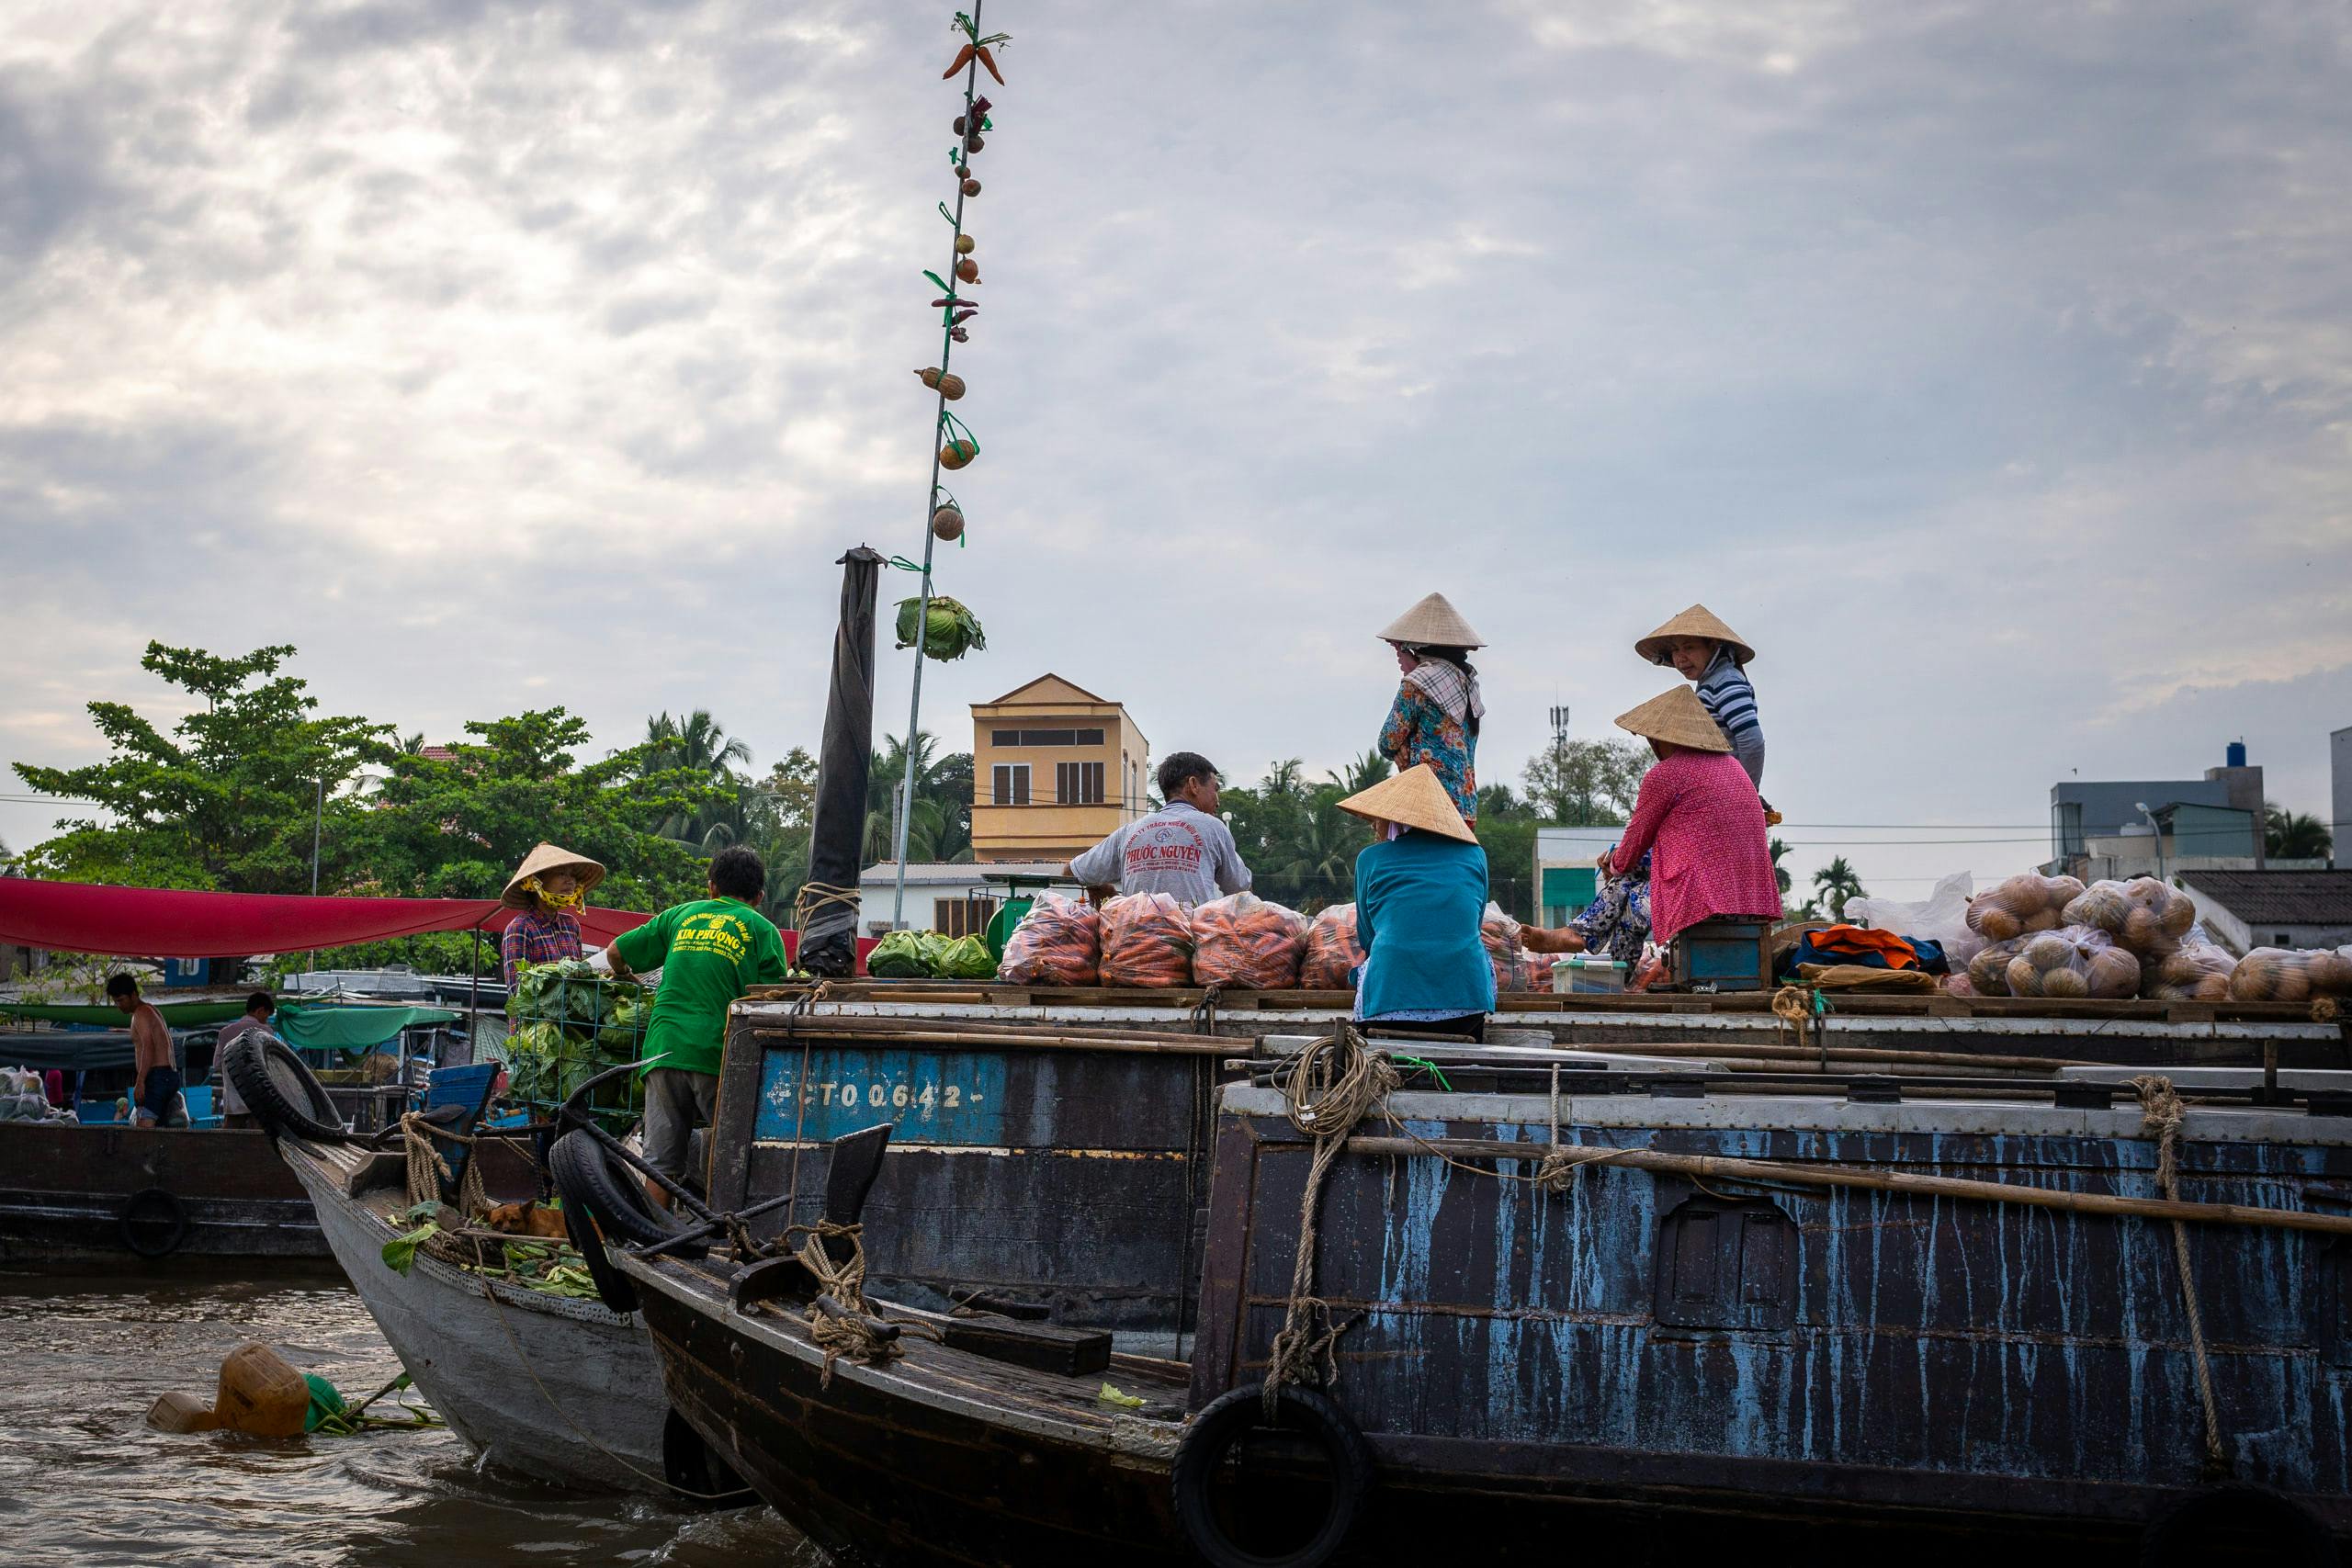 Merchants on a boat in a floating market